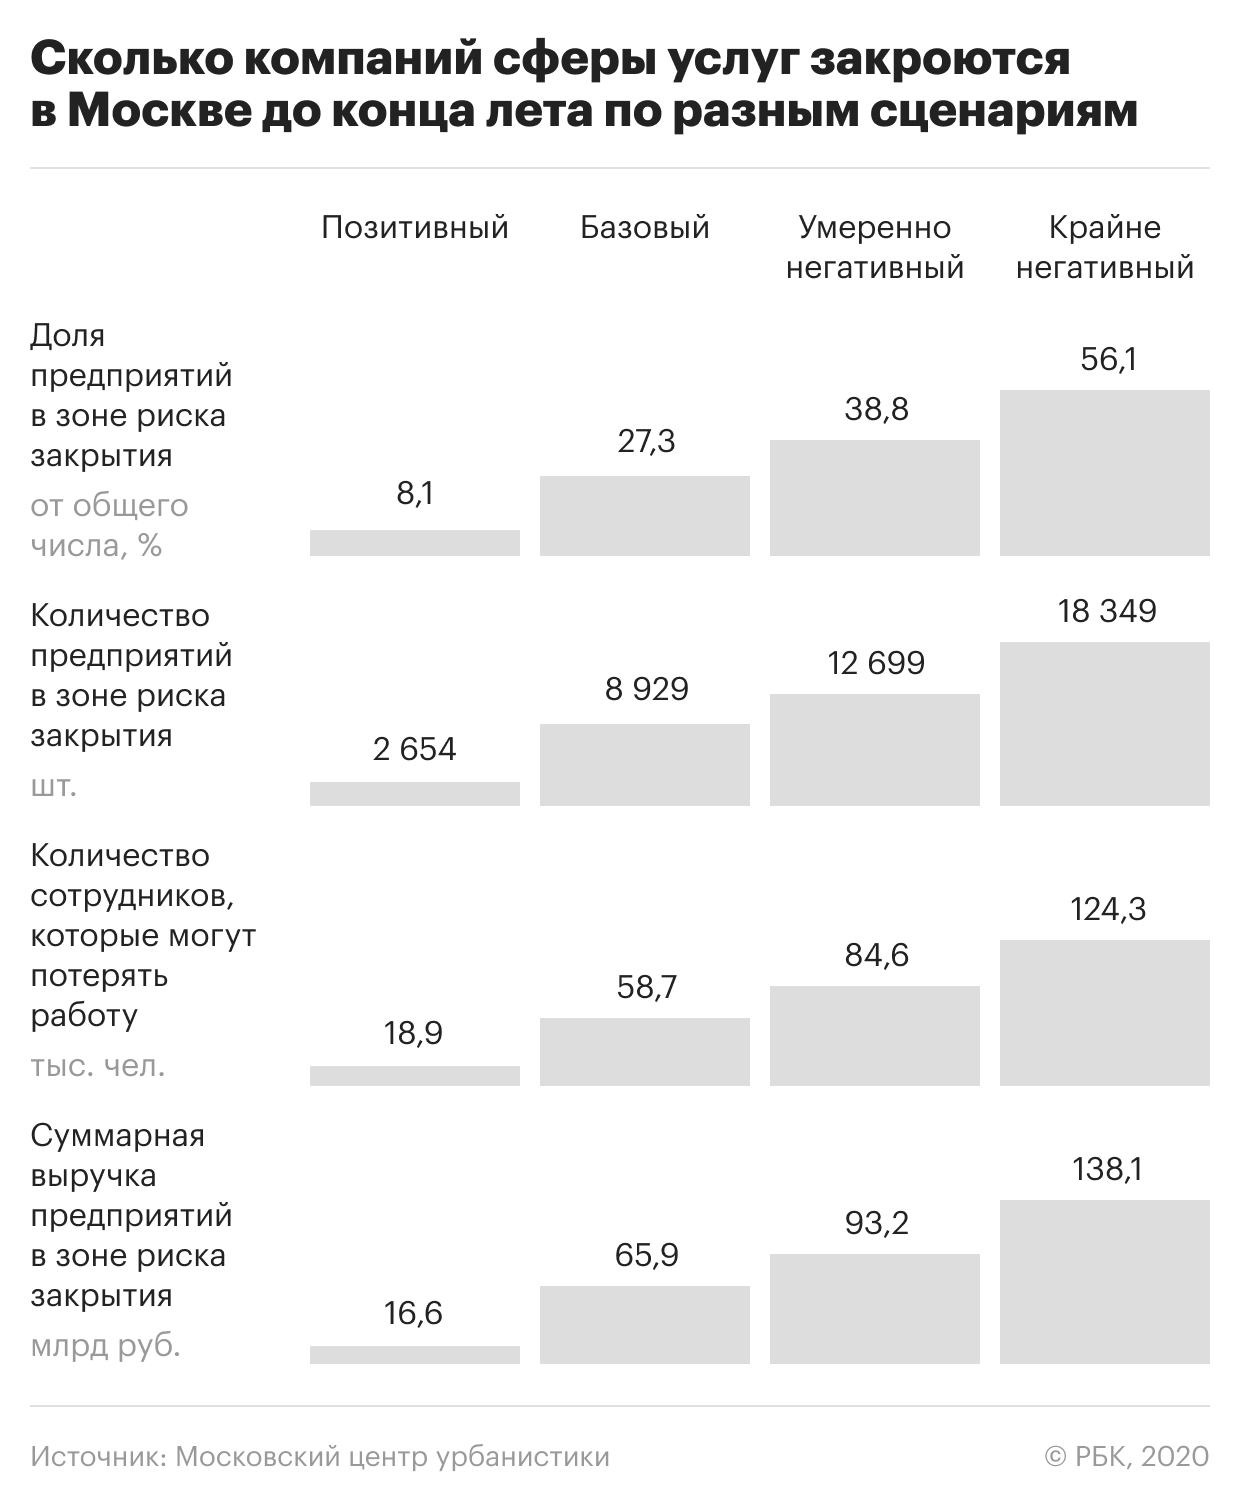 Лето не переживут почти треть компаний сферы услуг в Москве